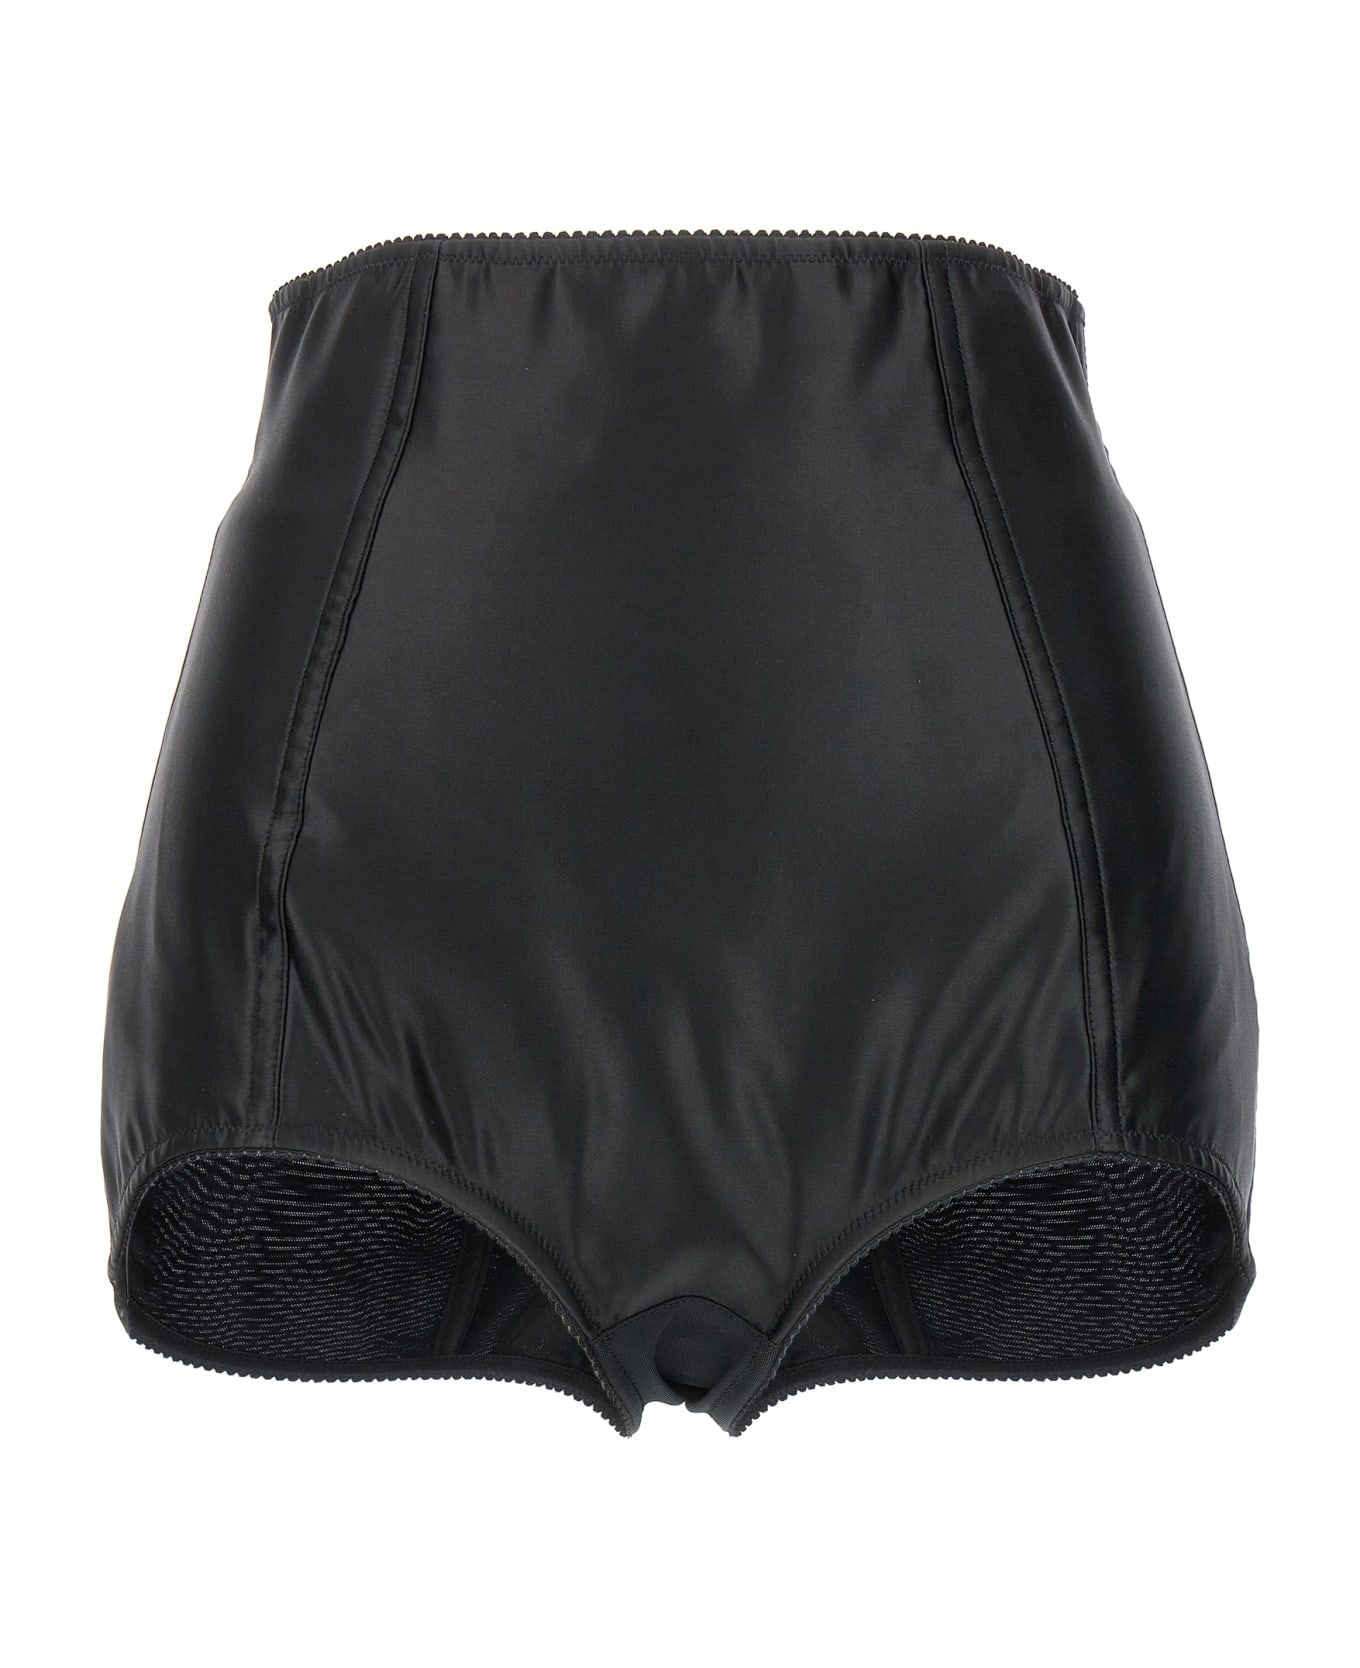 Dolce & Gabbana High Waisted Shorts - Black